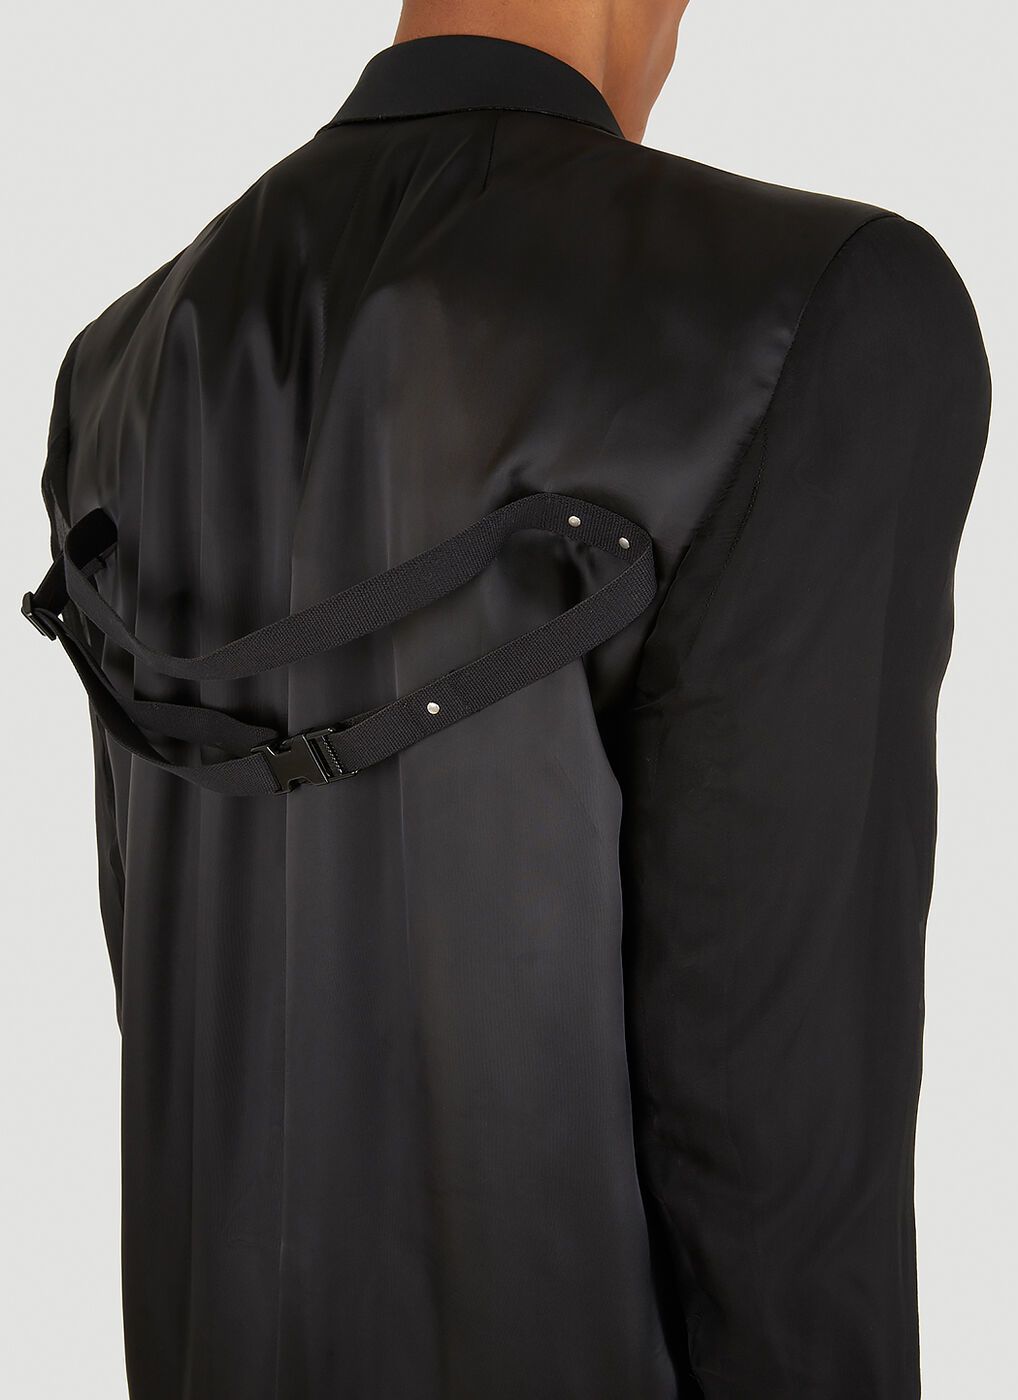 Fogtatlin Draped Strap Coat in Black